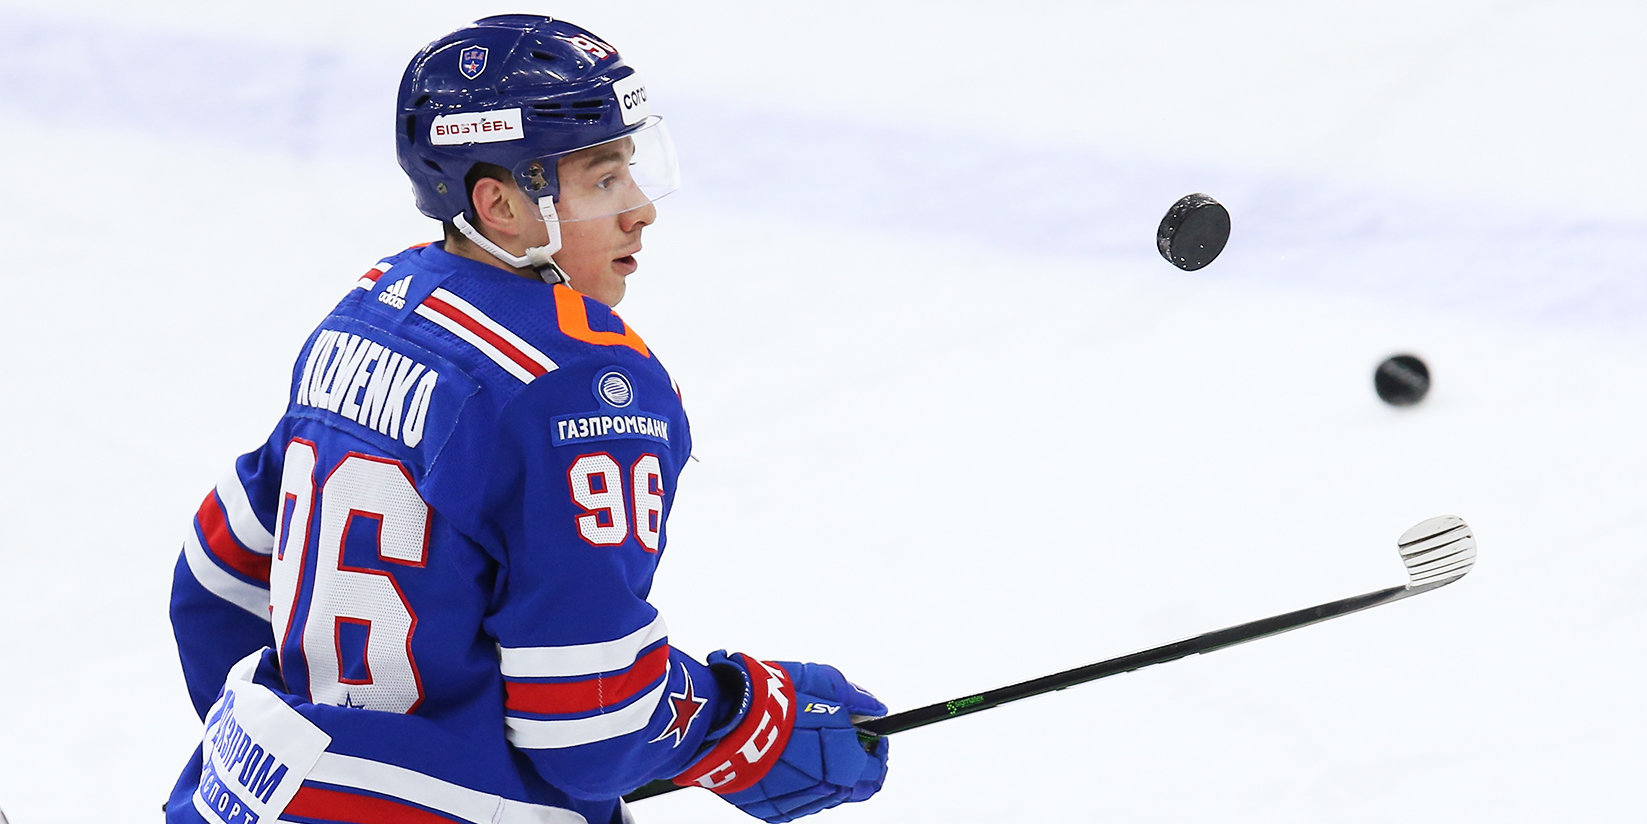 The Hockey News: у Кузьменко высокий потенциал, однако ожидания от 26-летнего игрока должны быть реалистичными